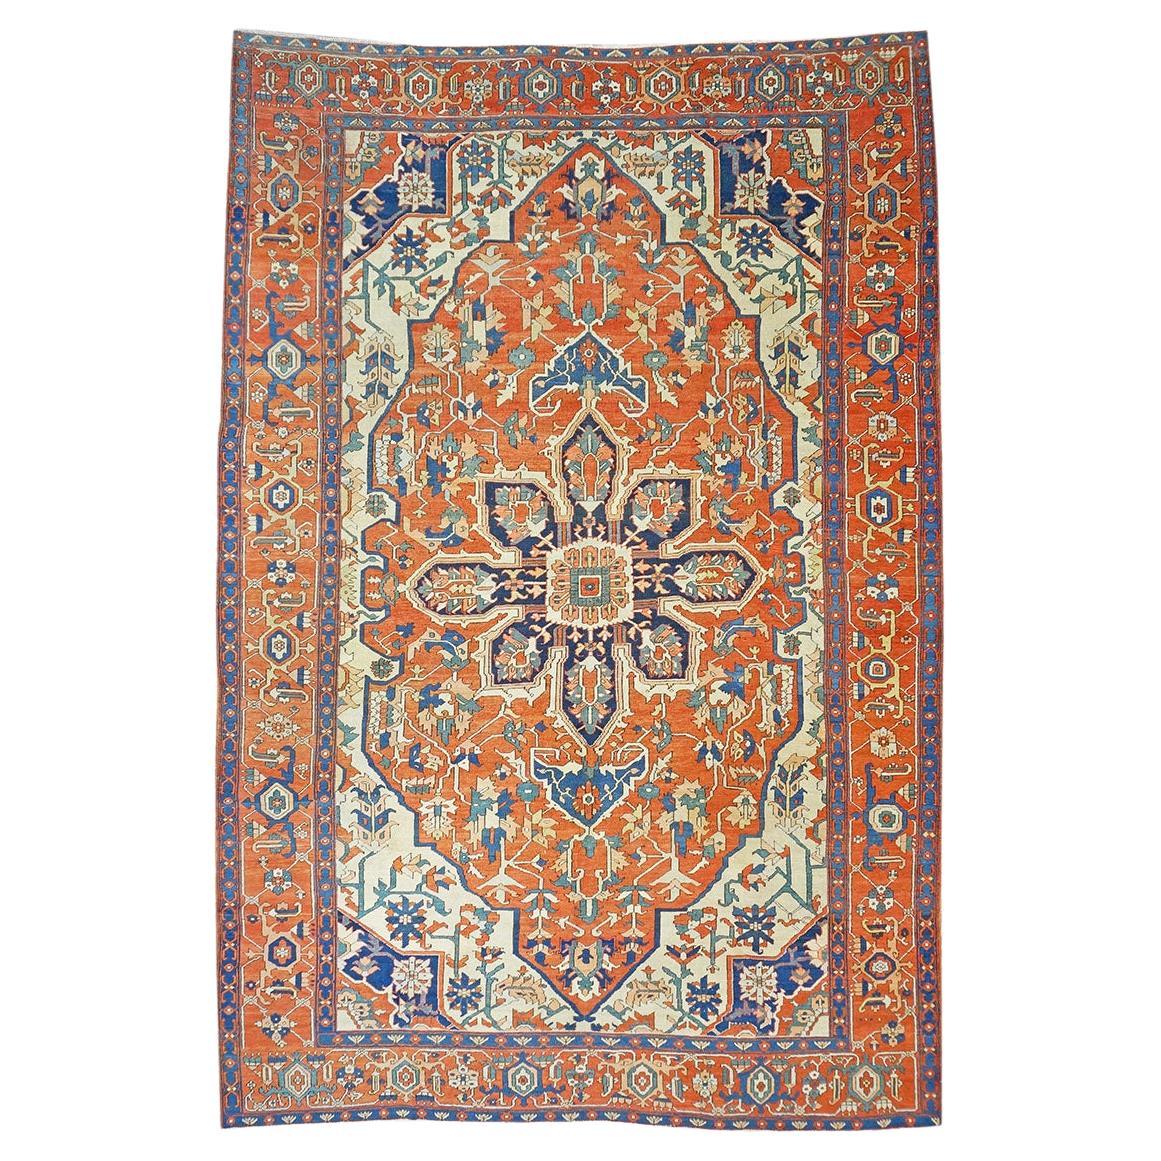 Antiker persischer Serapi-Teppich in Rost und Marineblau, handgefertigt, 10x14